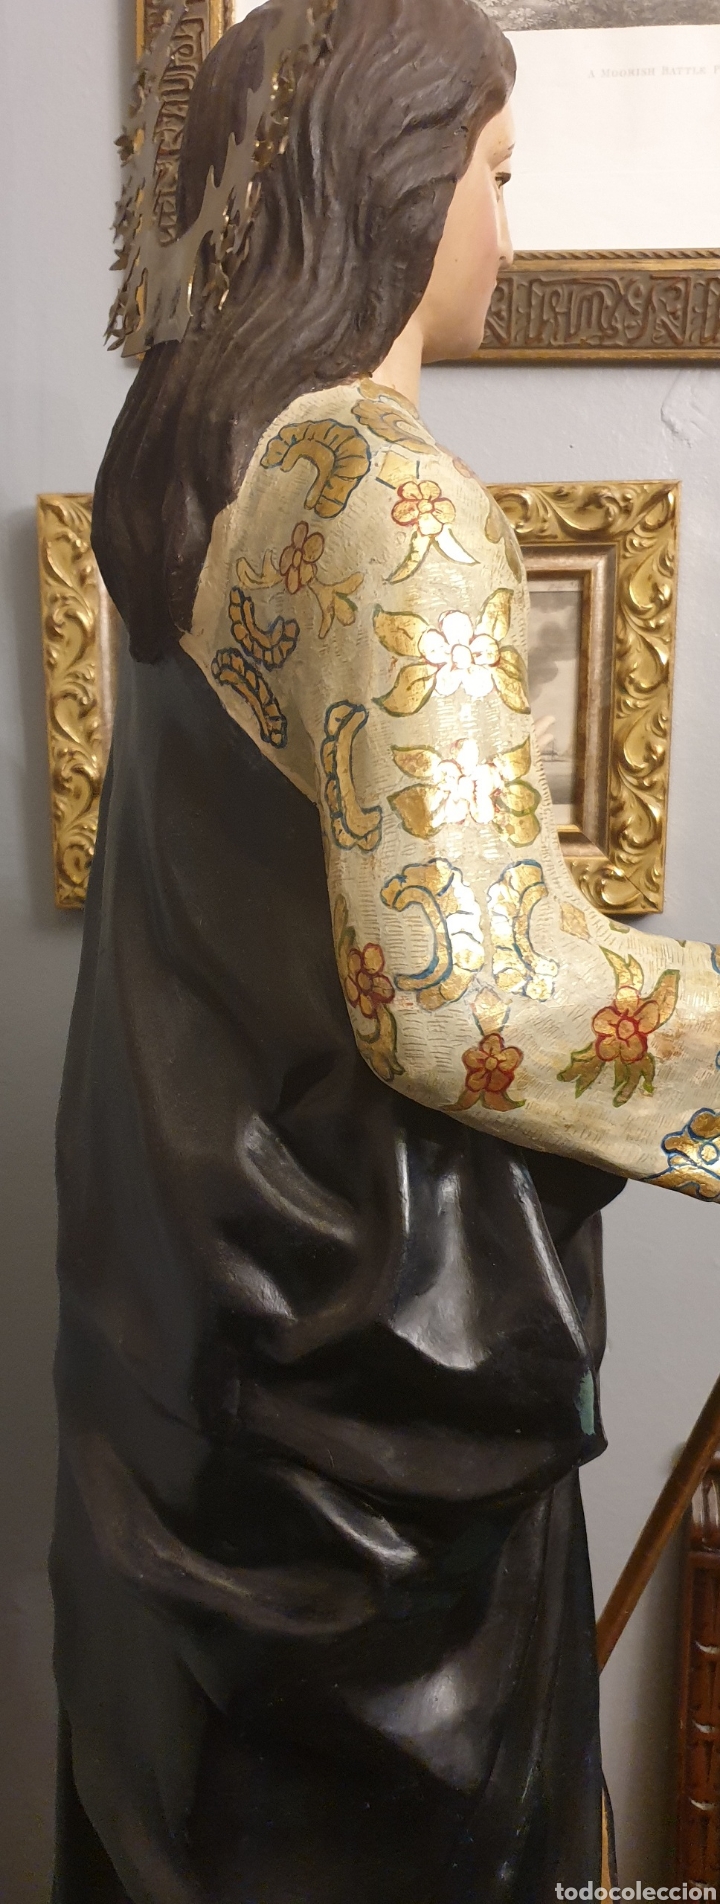 Antigüedades: Virgen de la aurora del siglo XVIII ( cara y manos de madera El resto gasas enfocadas con escayola) - Foto 10 - 242917295